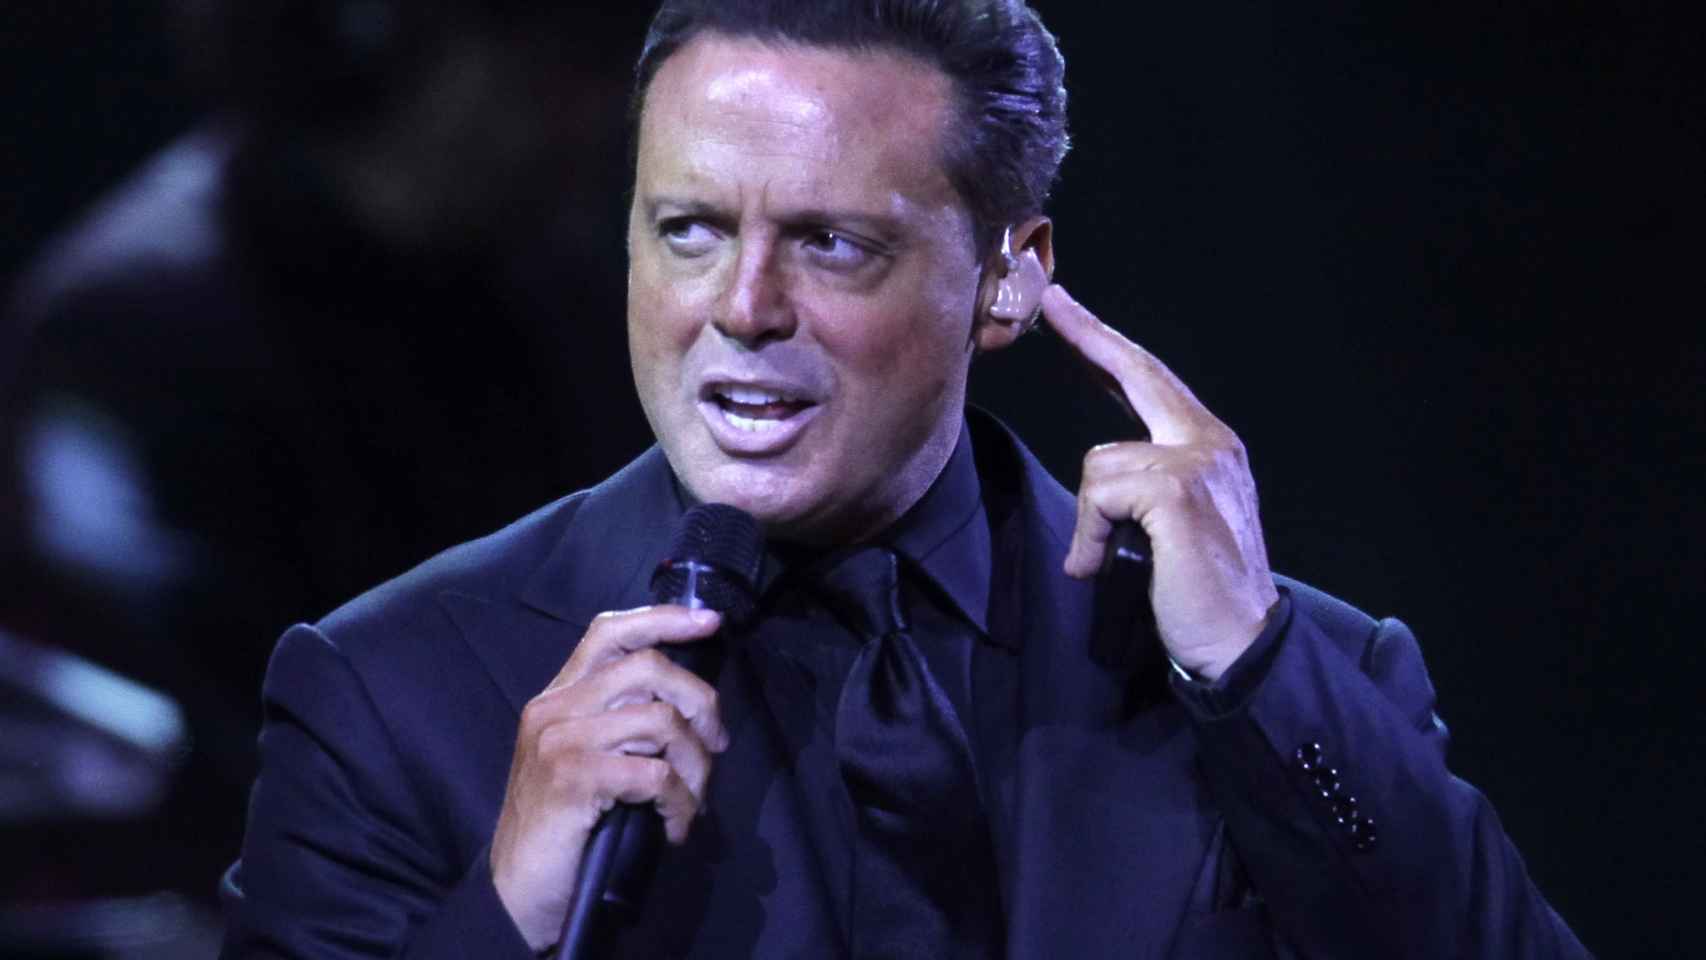 El cantante ha cancelado los conciertos previstos en México DF por problemas de salud